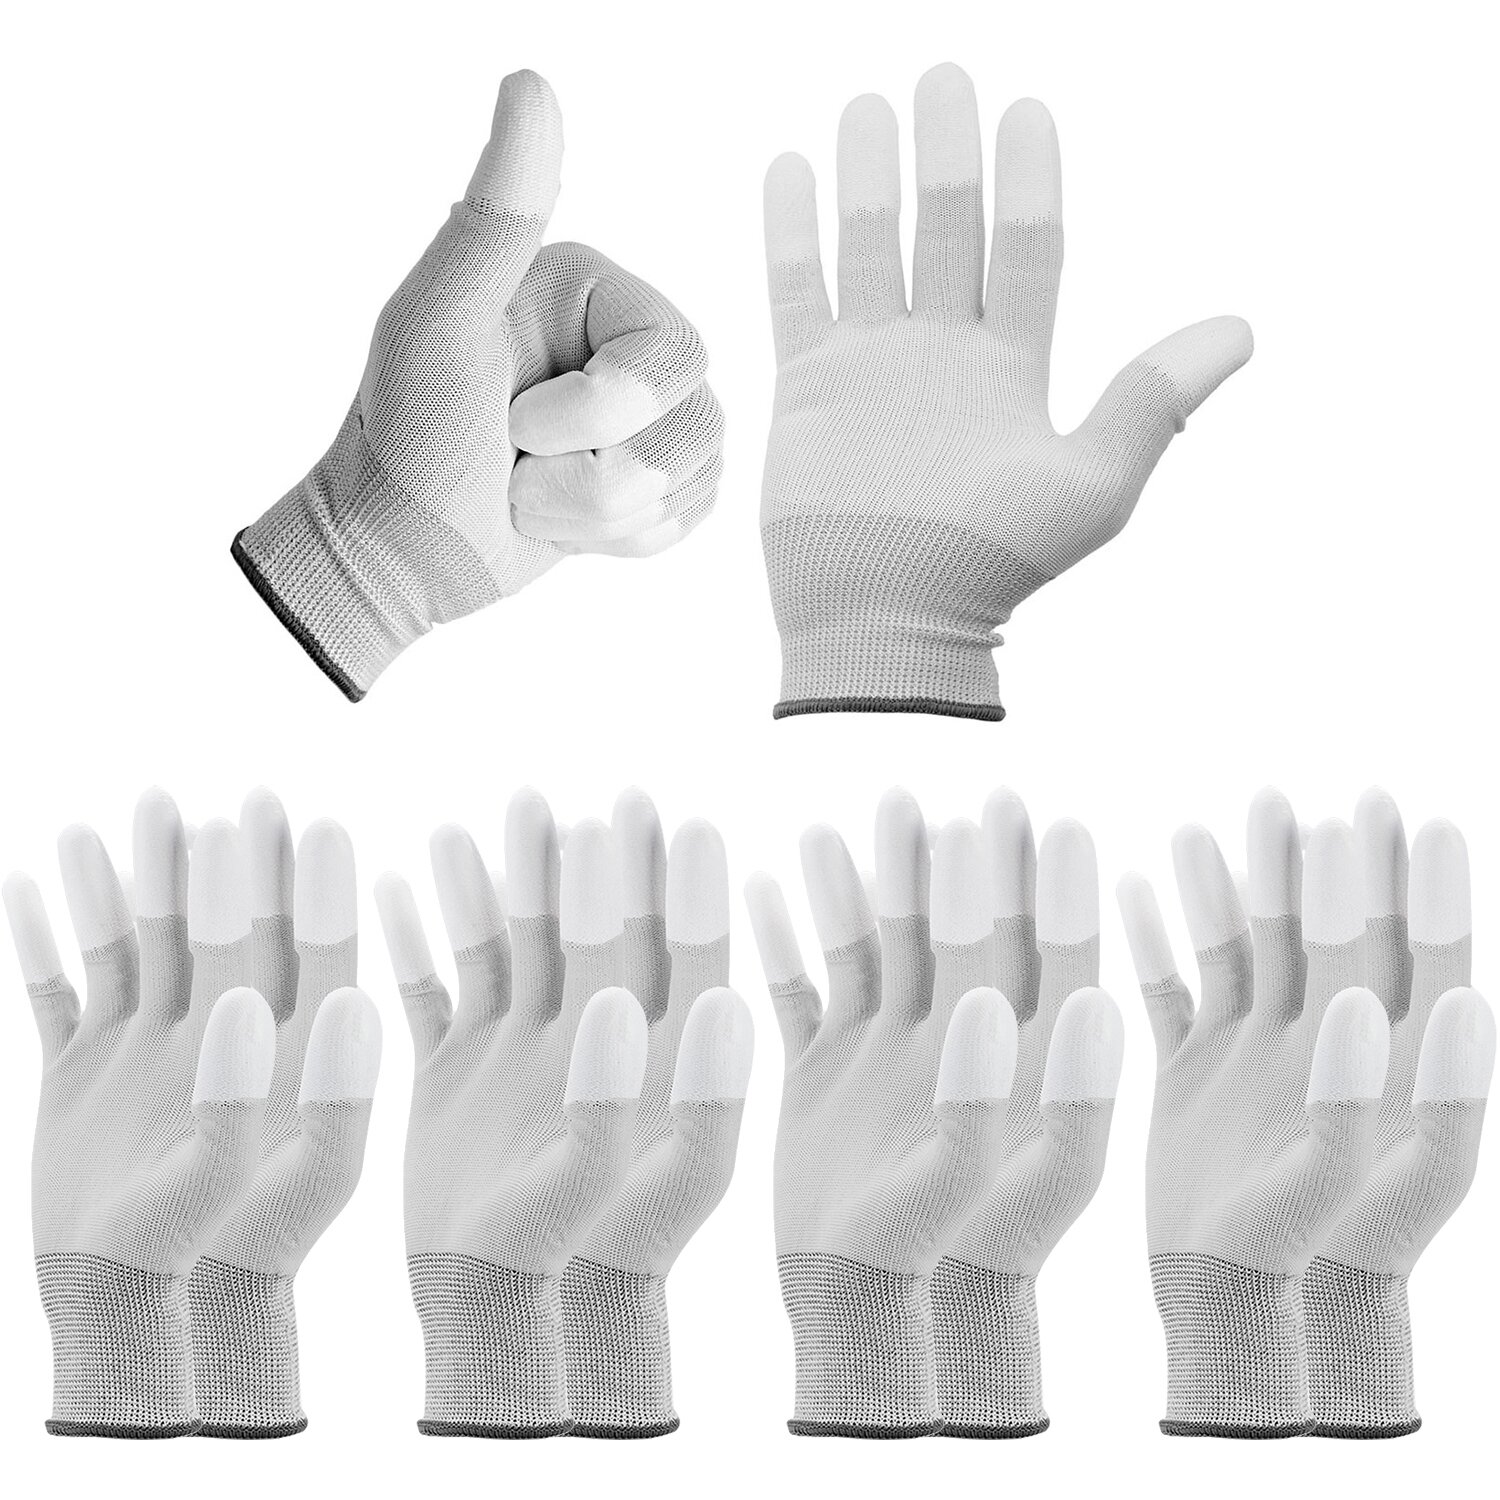 5x Paar Minadax ESD Antistatik Carbon Handschuhe für elektronische Arbeiten in Größe M - ideal geeignet für Reiningung und Reparatur